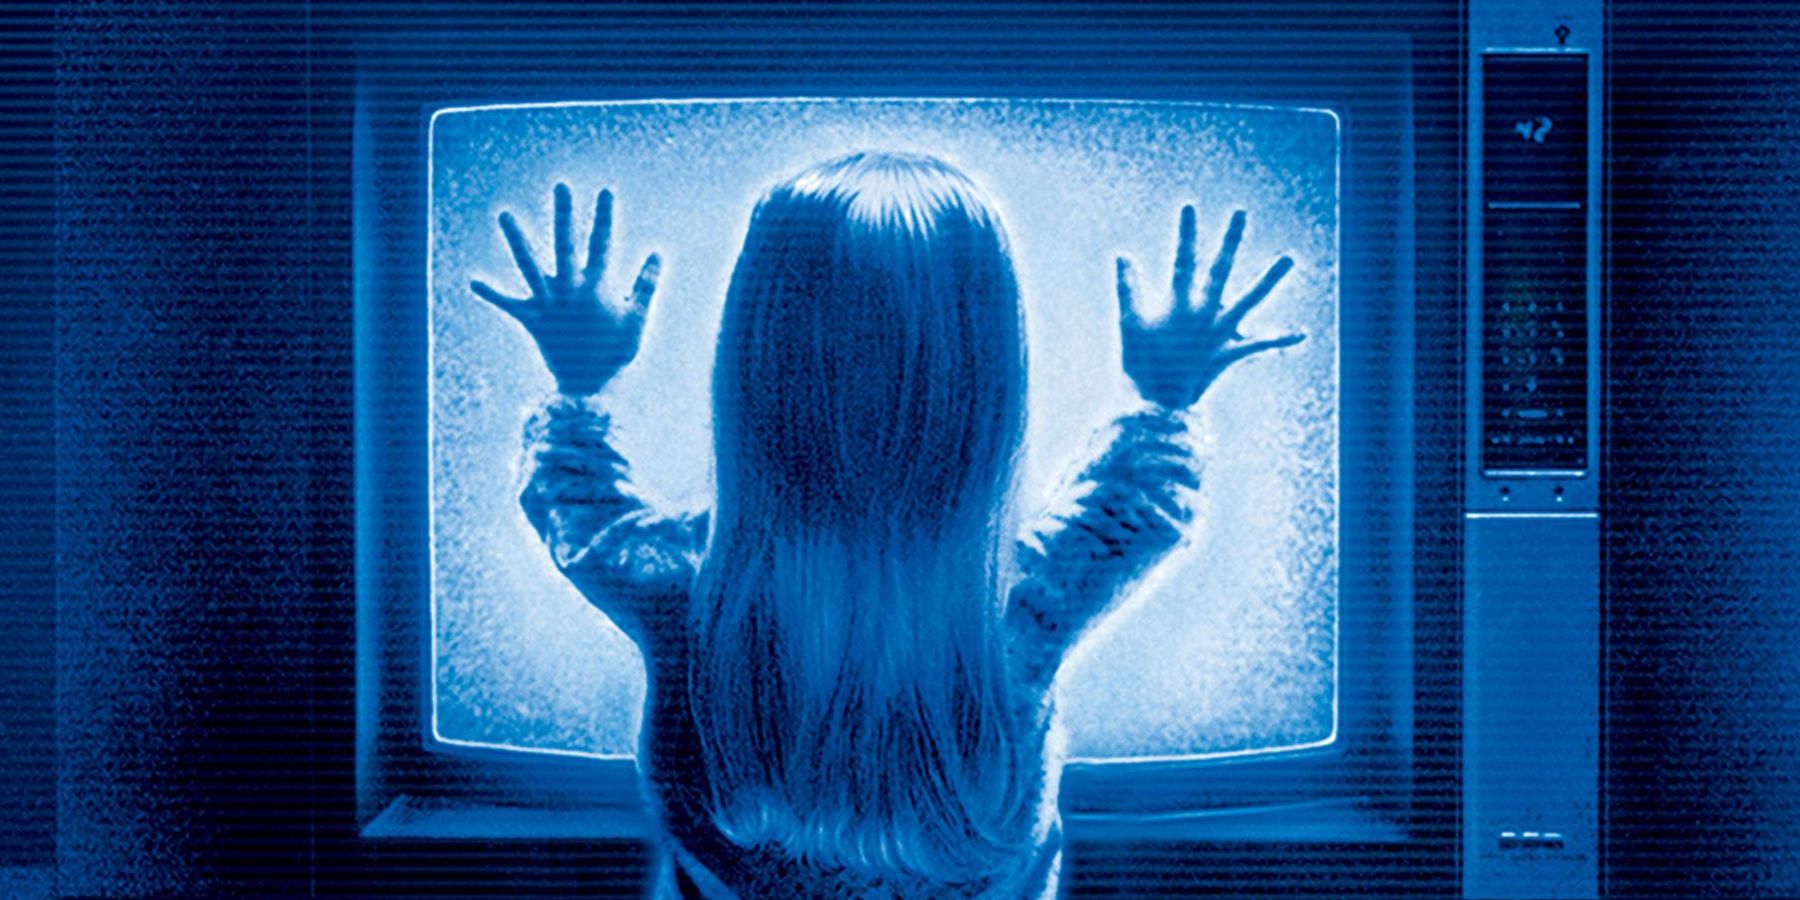 poltergeist 1982 girl touching tv